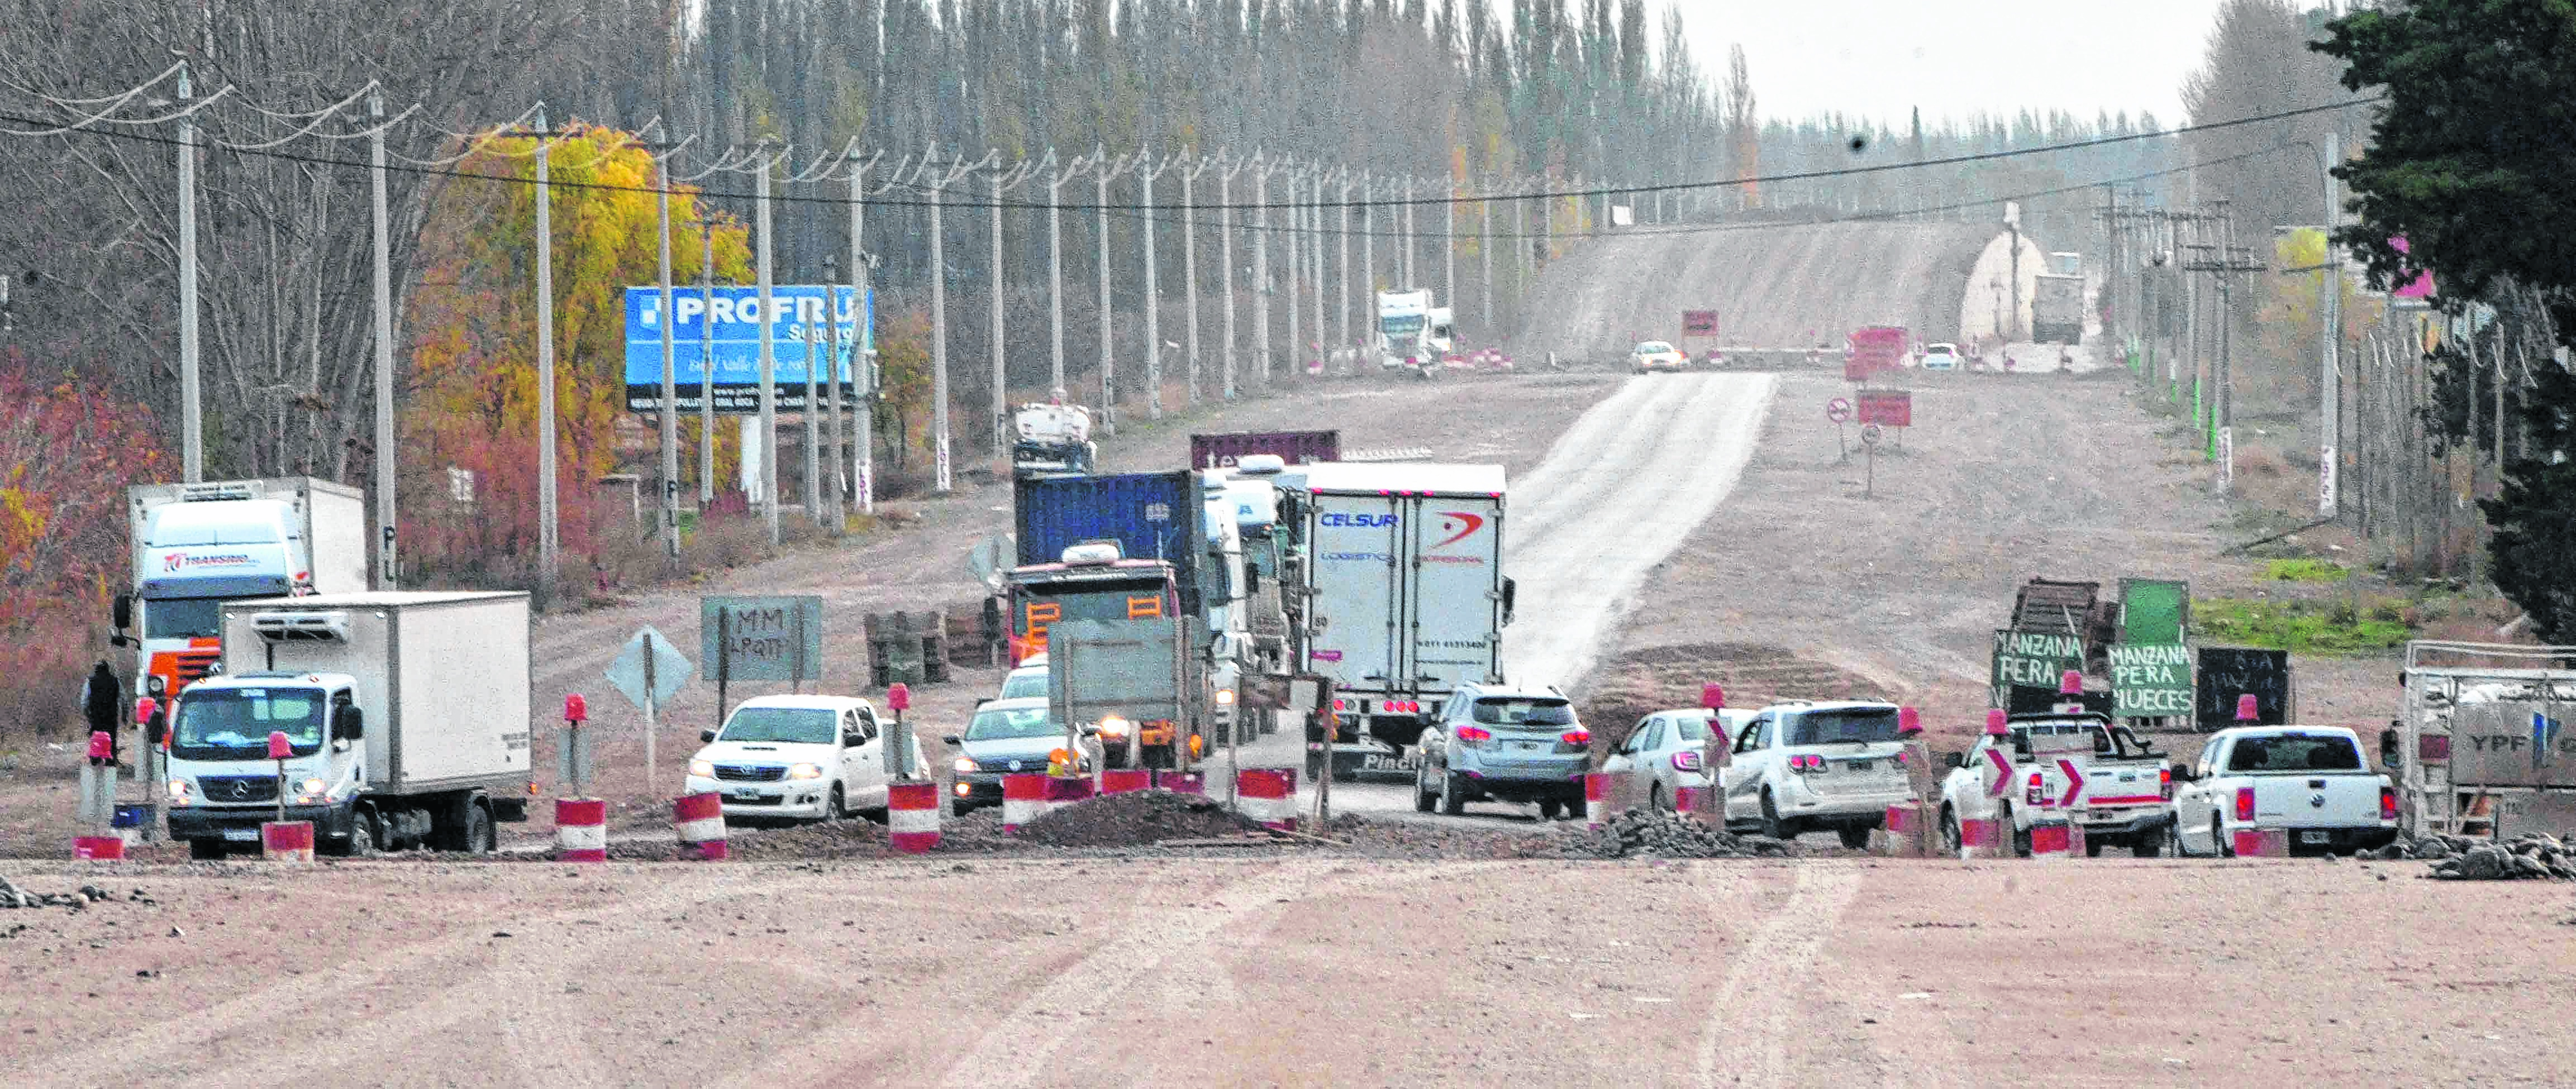 Los trabajos para construir 10 kilómetros de autopista se reactivaron en abril. Dos meses después hay incertidumbre sobre el ritmo para el segundo semestre. Foto Yamil Regules. 